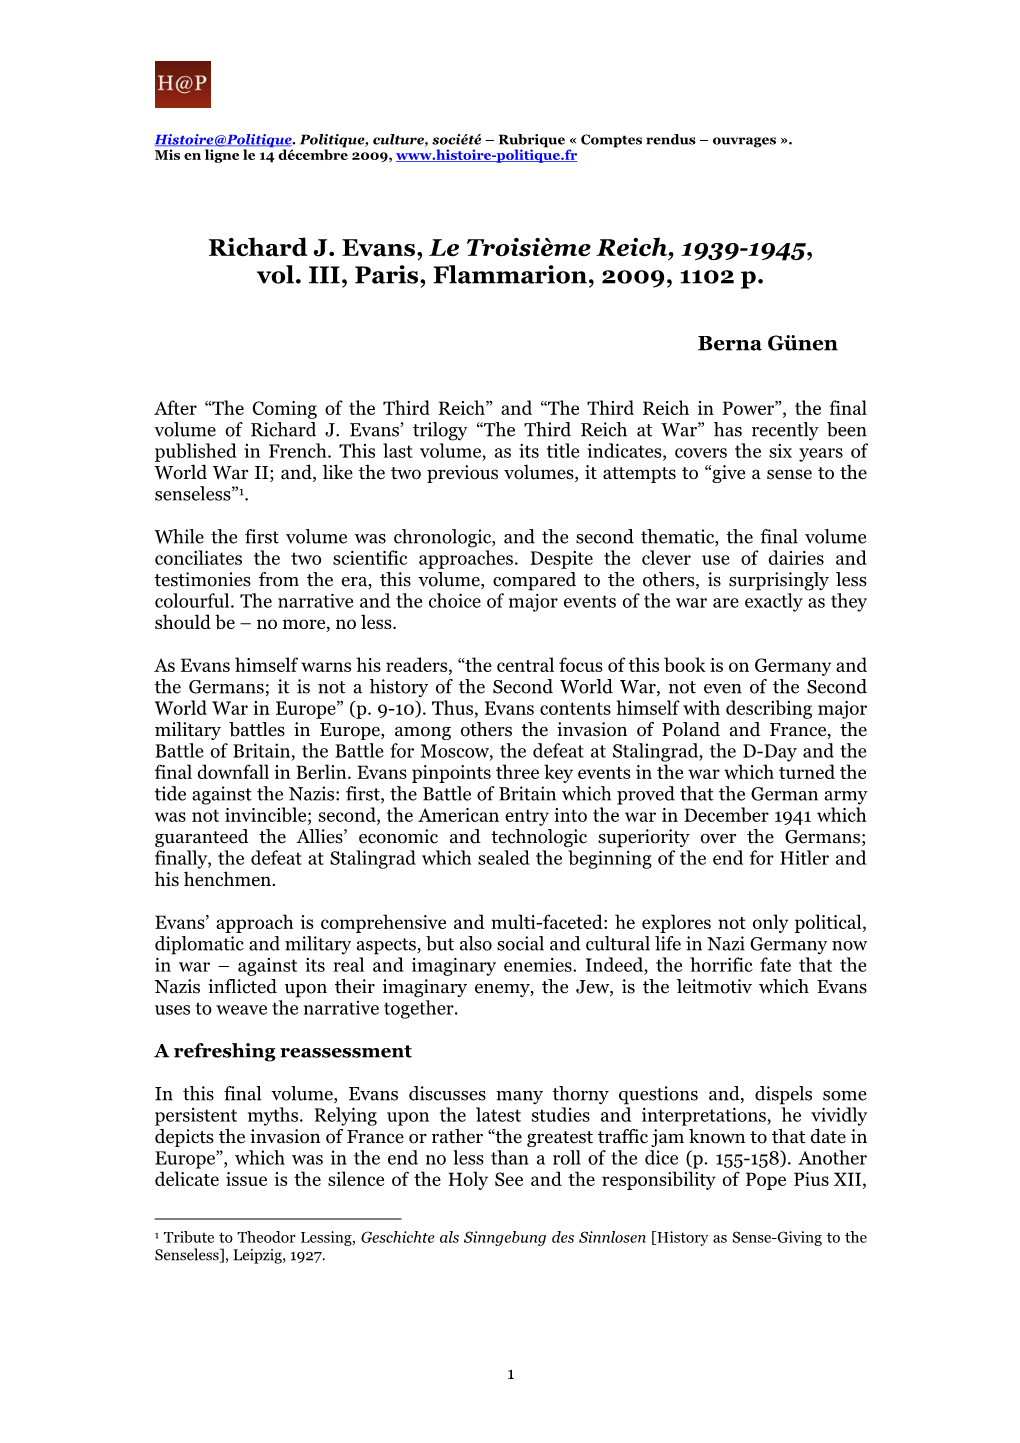 Richard J. Evans, Le Troisième Reich, 1939-1945, Vol. III, Paris, Flammarion, 2009, 1102 P